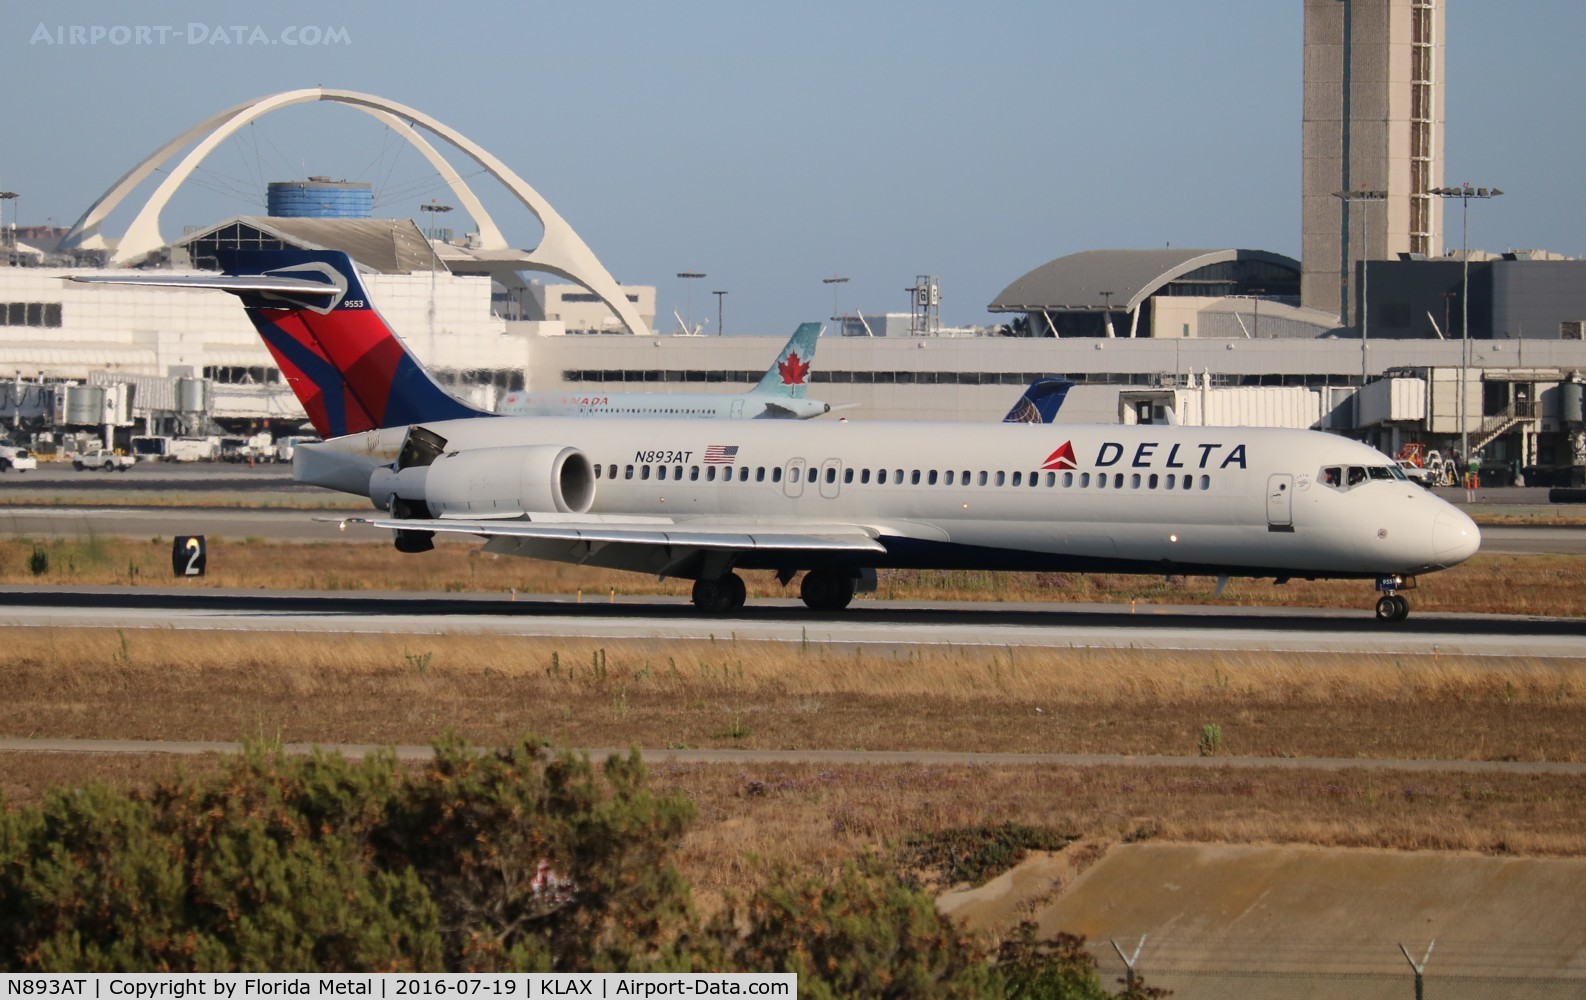 N893AT, 2004 Boeing 717-200 C/N 55045, Delta 717